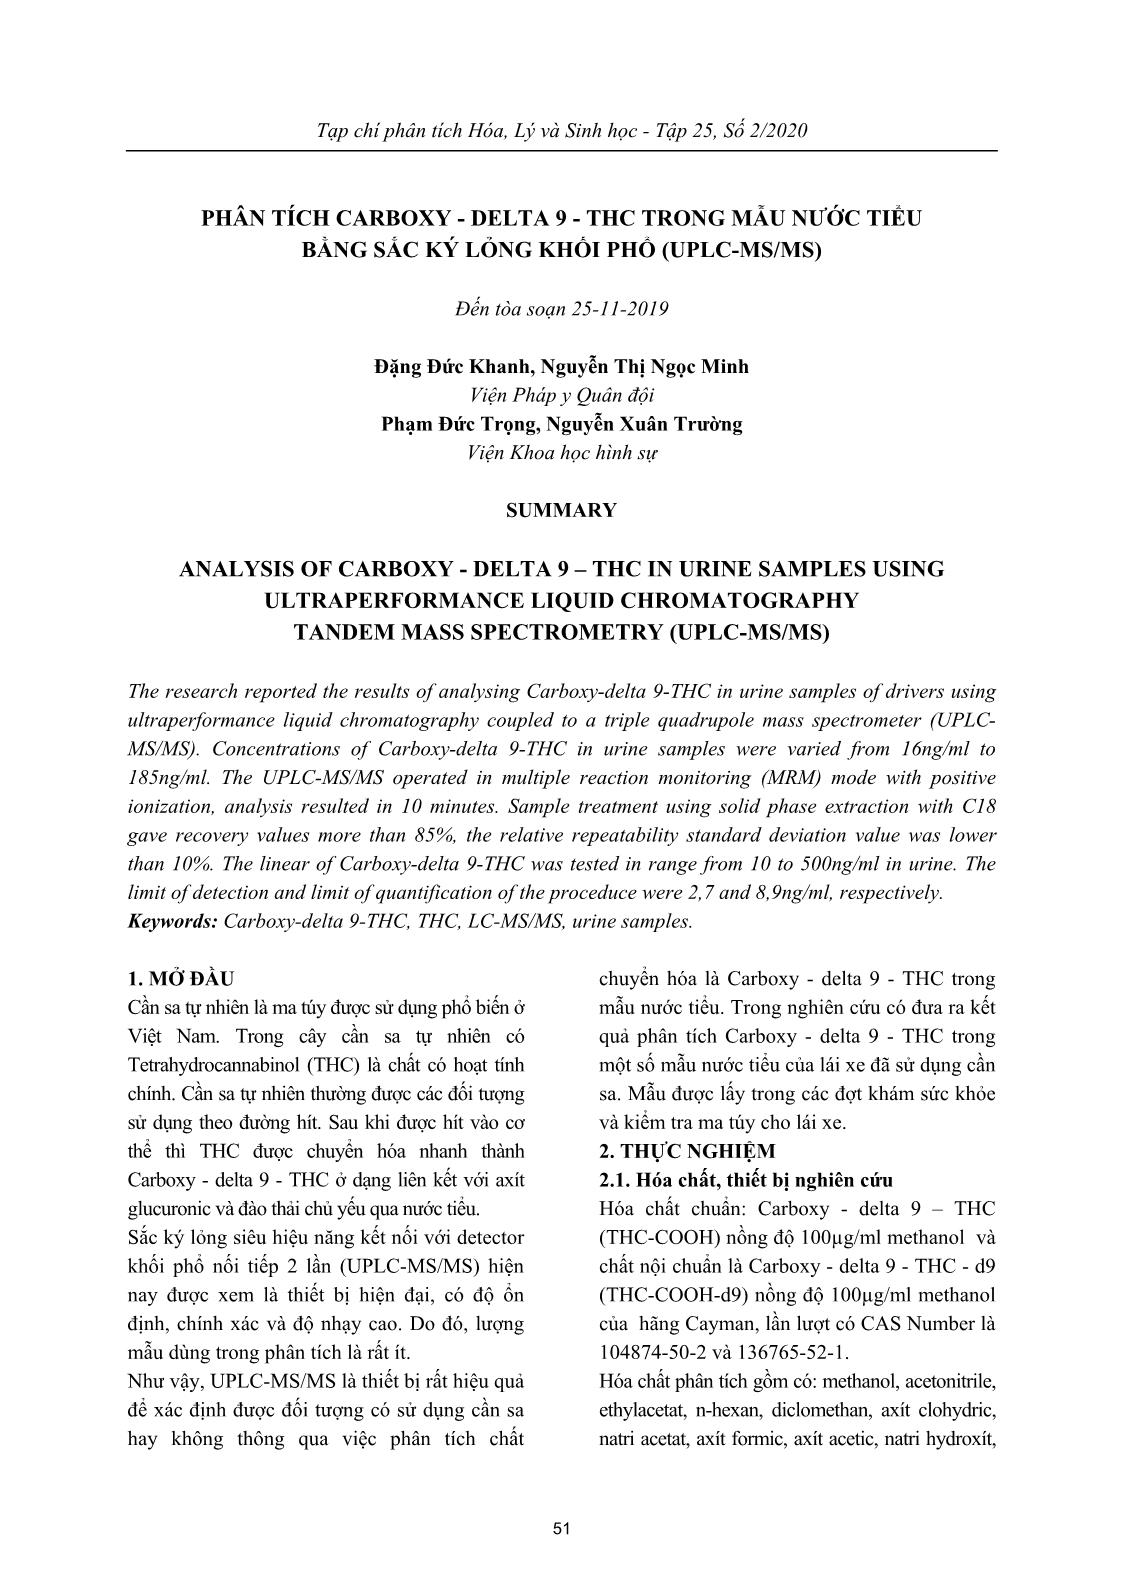 Phân tích Carboxy-delta 9-THC trong mẫu nước tiểu bằng sắc ký lỏng khối phổ (UPLC-MS/MS) trang 1